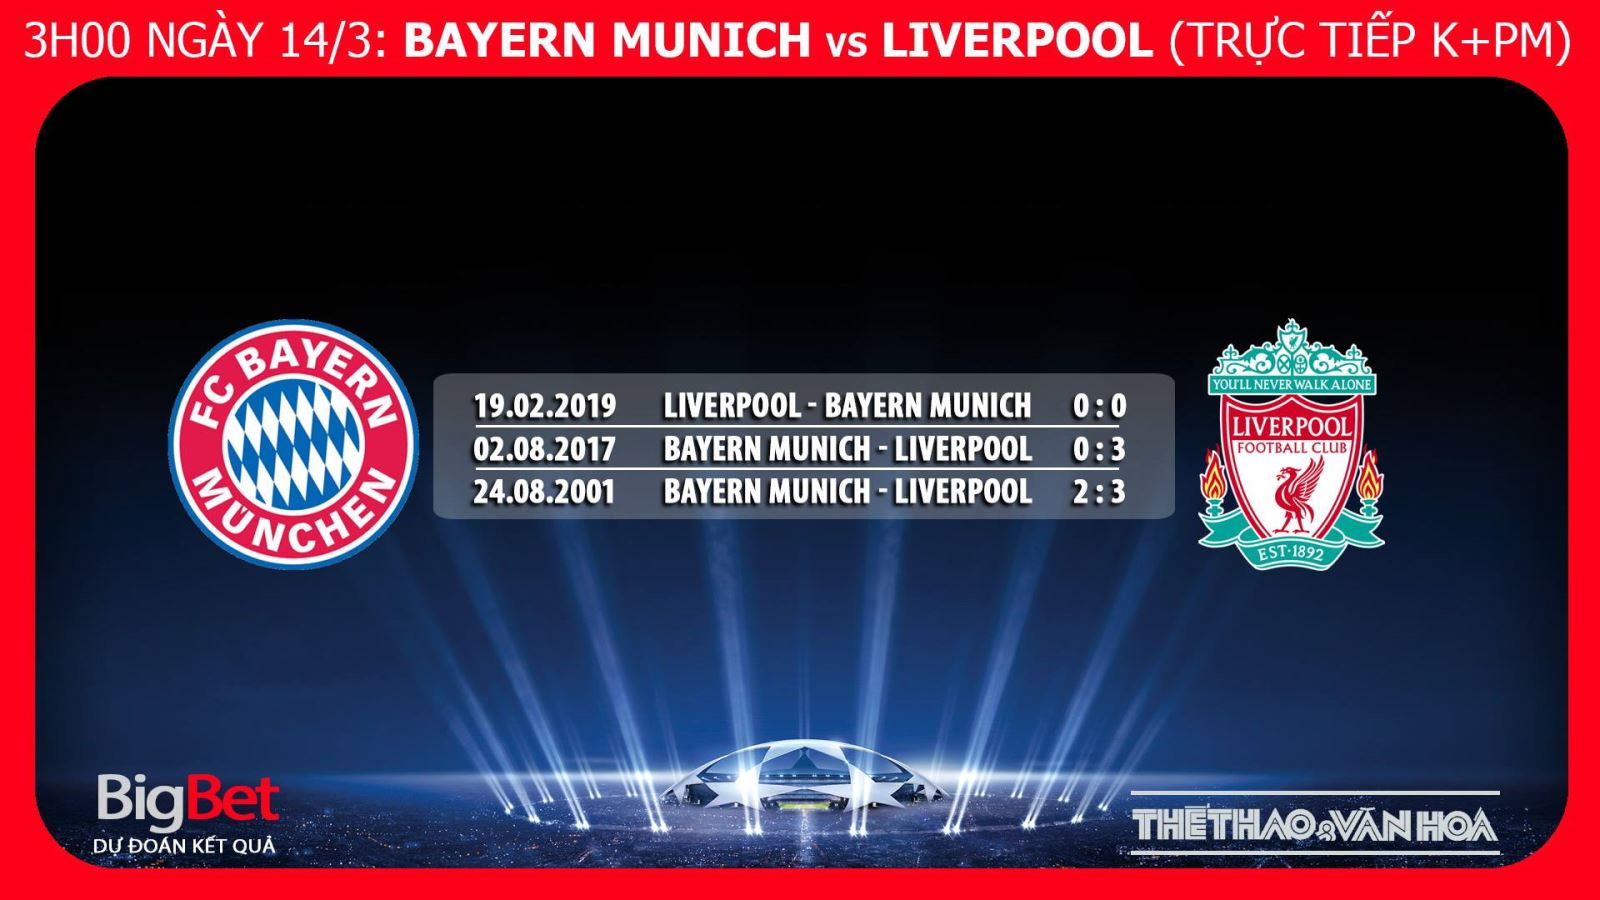 Bayern, Bayern Munich vs Liverpool, trực tiếp bóng đá, Bayern Munich vs Liverpool, truc tiep bong da, nhận định bóng đá Bayern Munich vs Liverpool, kèo Bayern Munich vs Liverpool, kèo bóng đá, nhận định Bayern Munich vs Liverpool, dự đoán bóng đá